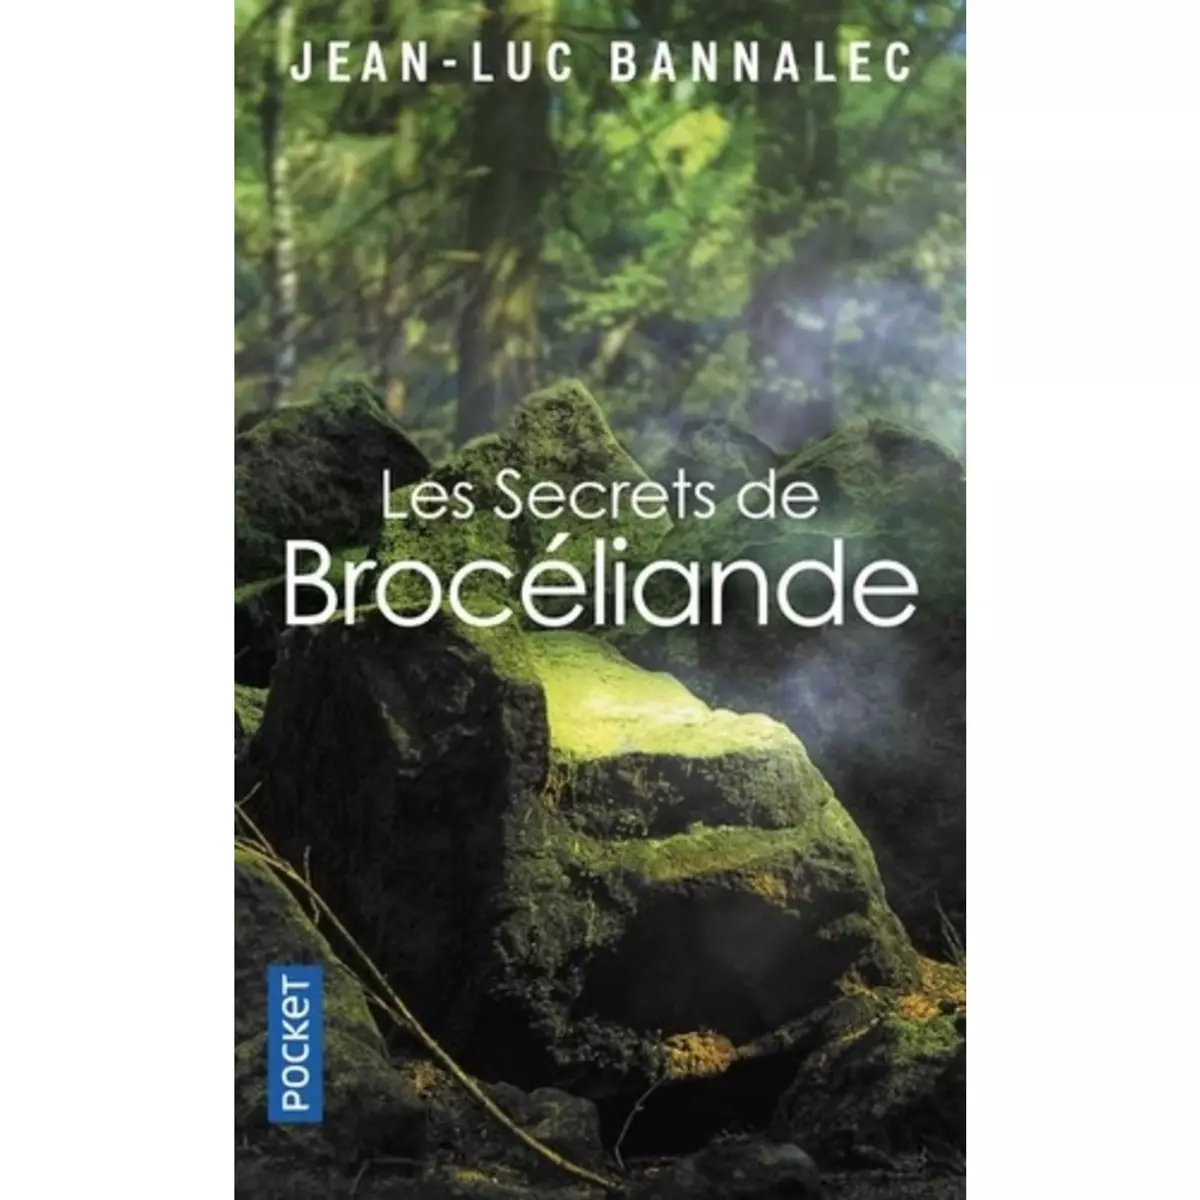  UNE ENQUETE DU COMMISSAIRE DUPIN : LES SECRETS DE BROCELIANDE, Bannalec Jean-Luc